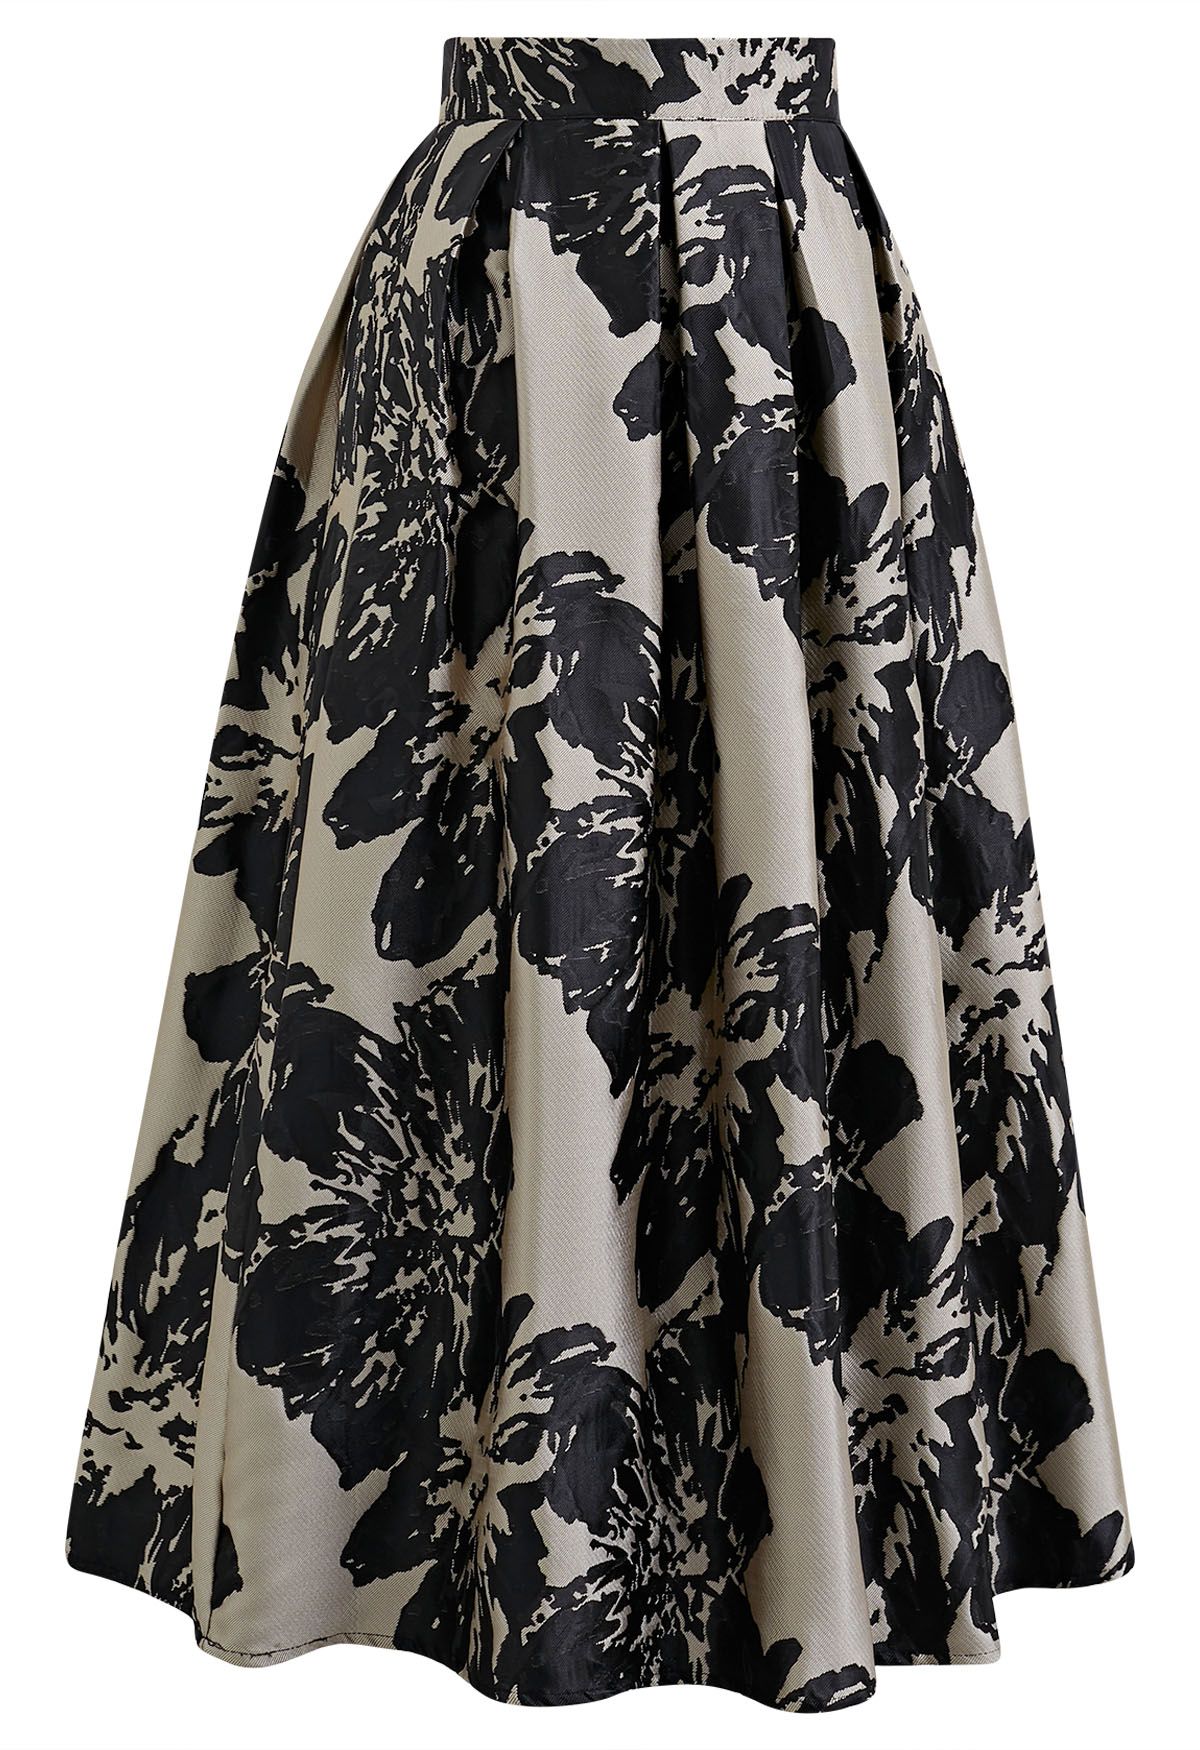 Striking Floral Jacquard Pleated Midi Skirt